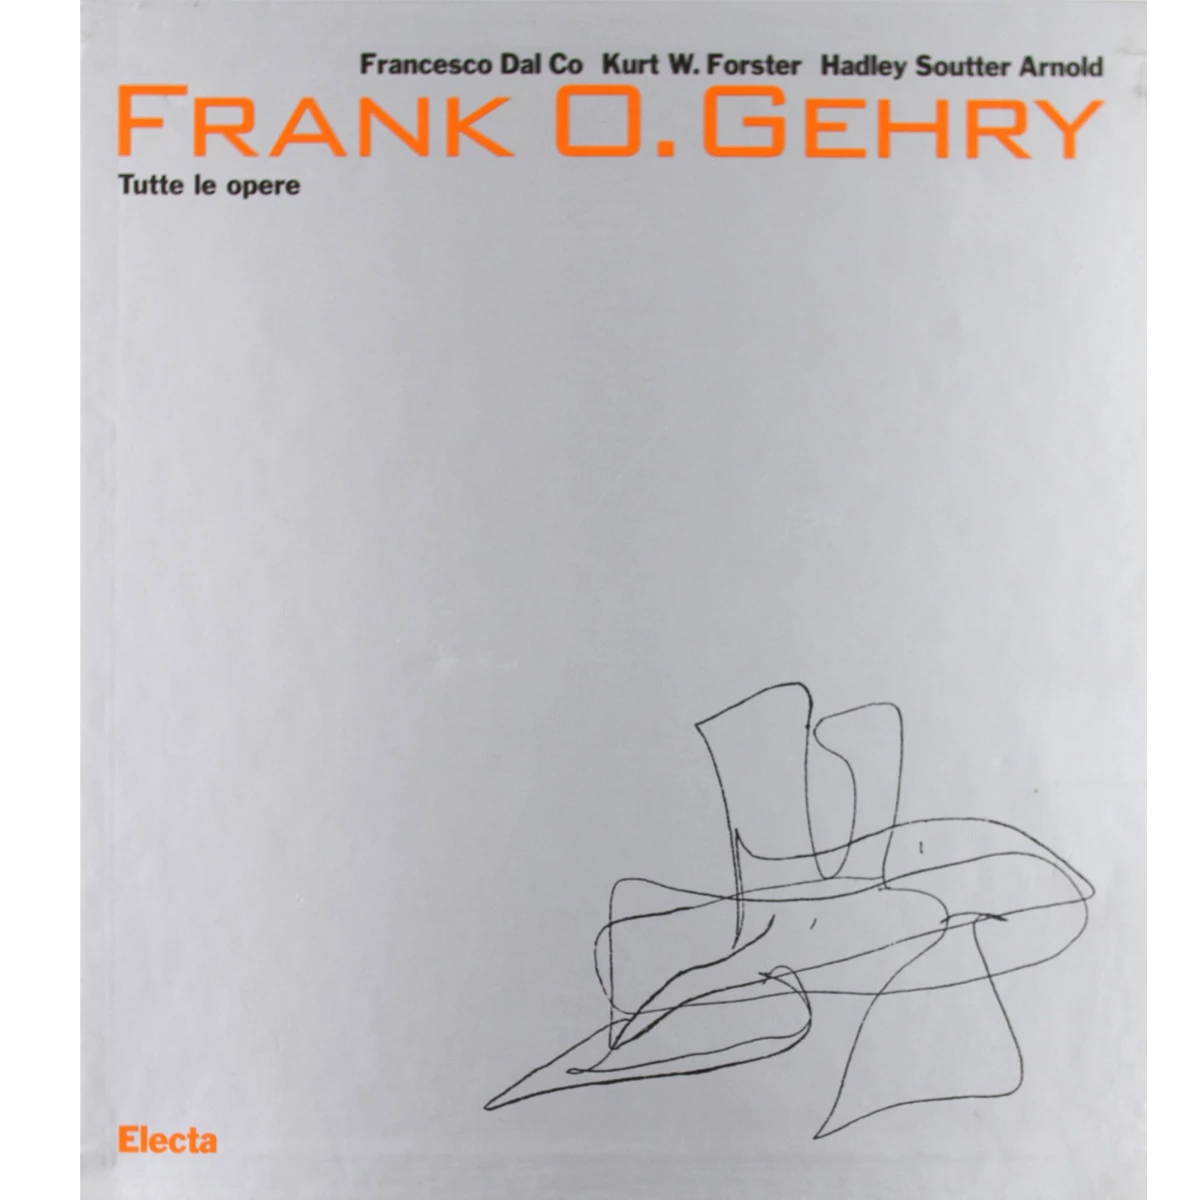 Frank O. Gehry: 